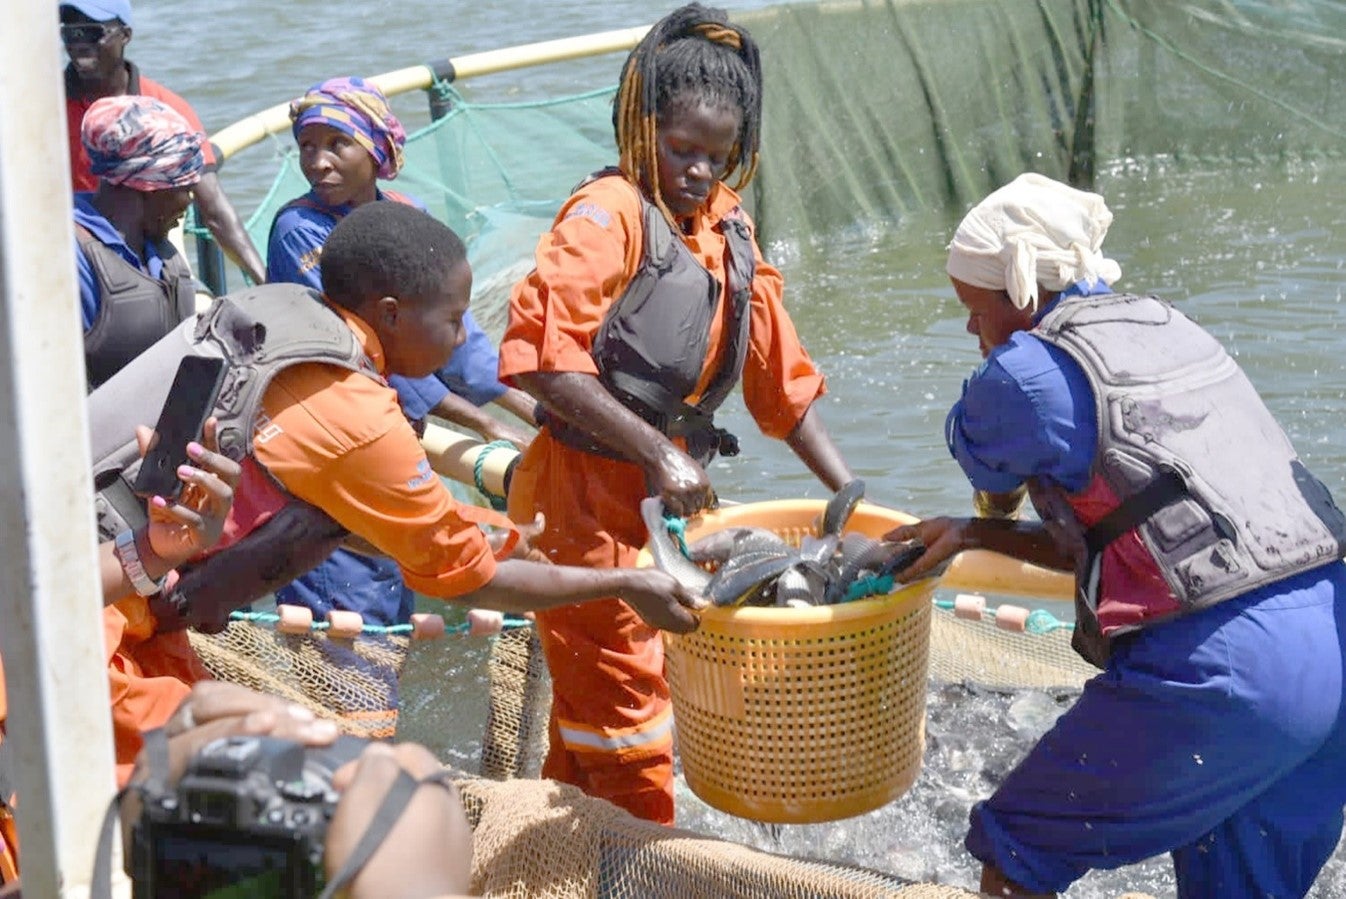 Women breaking barriers in the fish farming industry in Uganda.